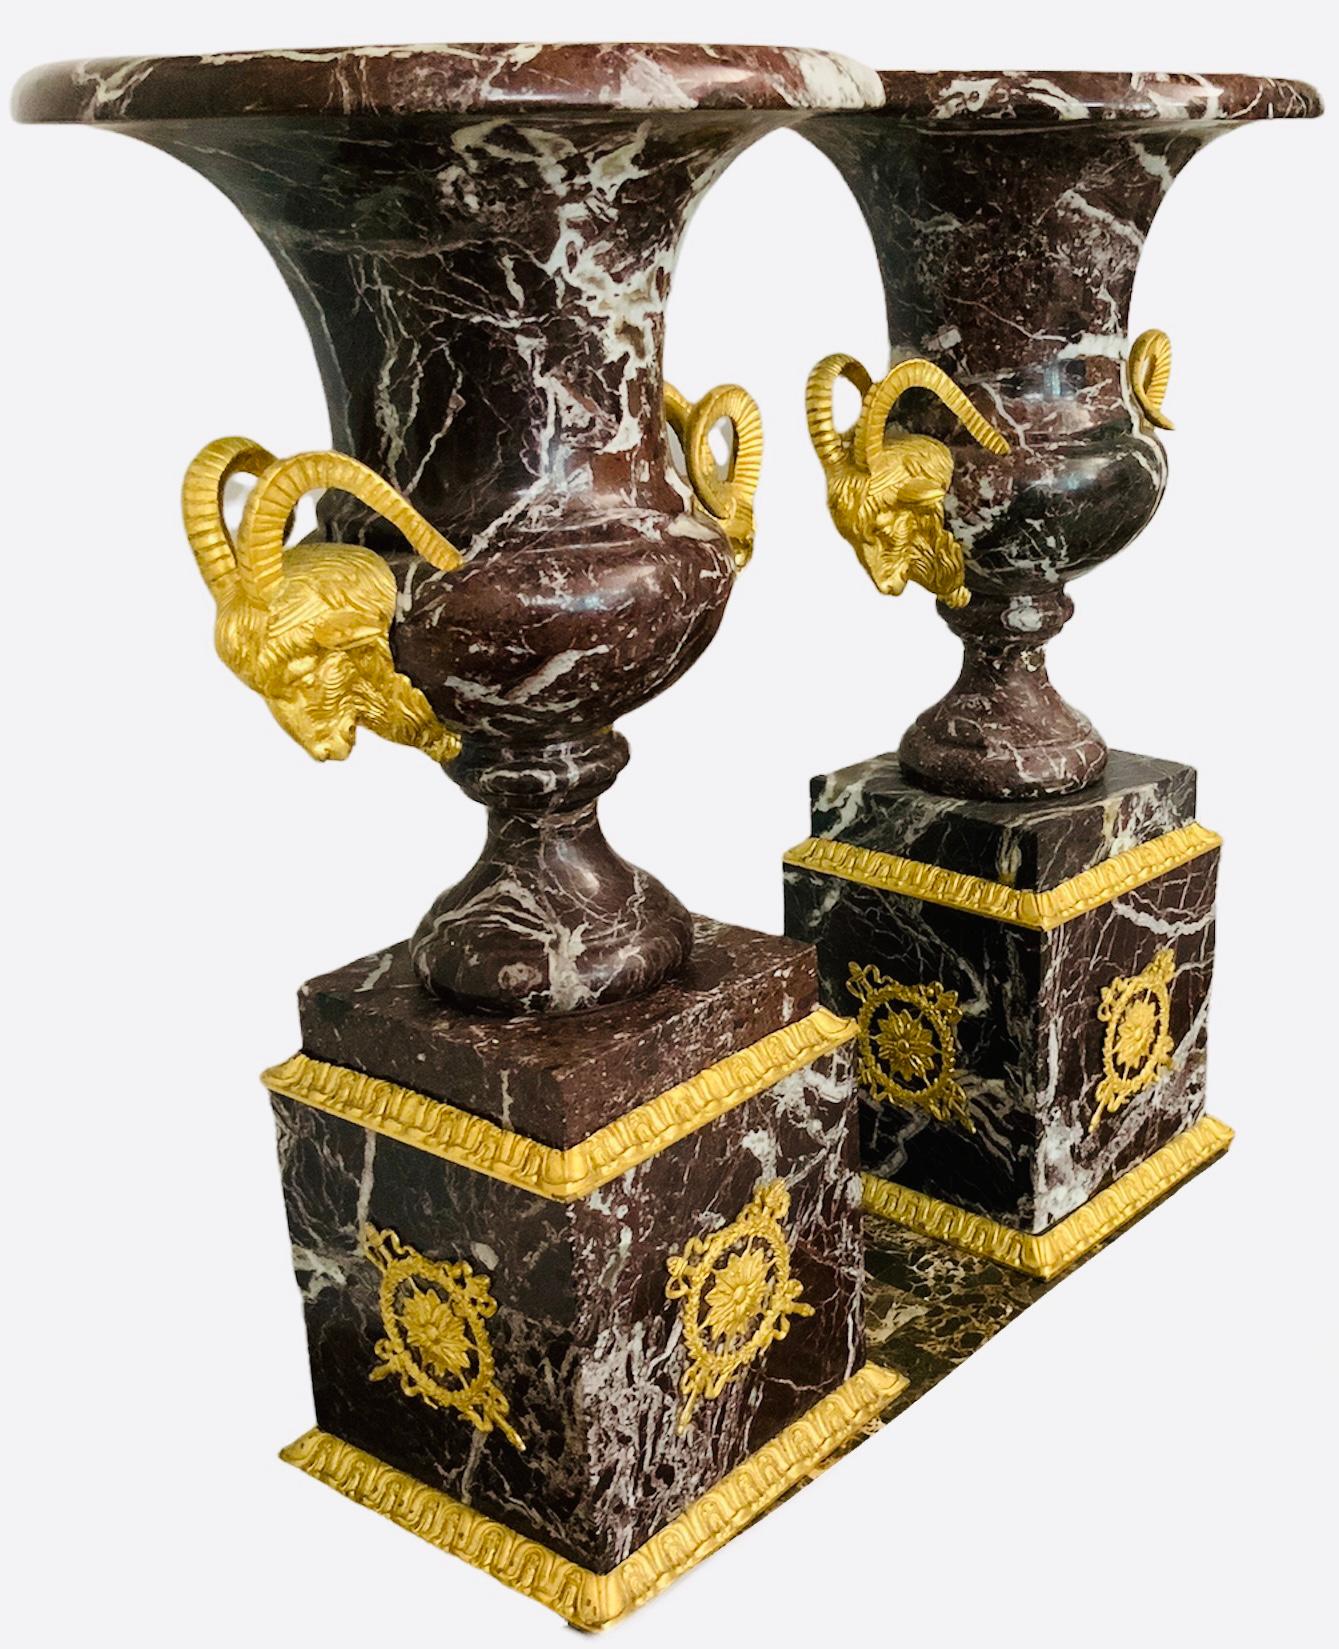 Es handelt sich um einen Satz glockenförmiger Urnen aus braunem Marmor mit Widderköpfen aus vergoldeter Bronze und quadratischen Marmorsockeln. Der Marmor weist ein ausgeprägtes weißes Äderungsmuster auf. Die Widderköpfe befinden sich im unteren